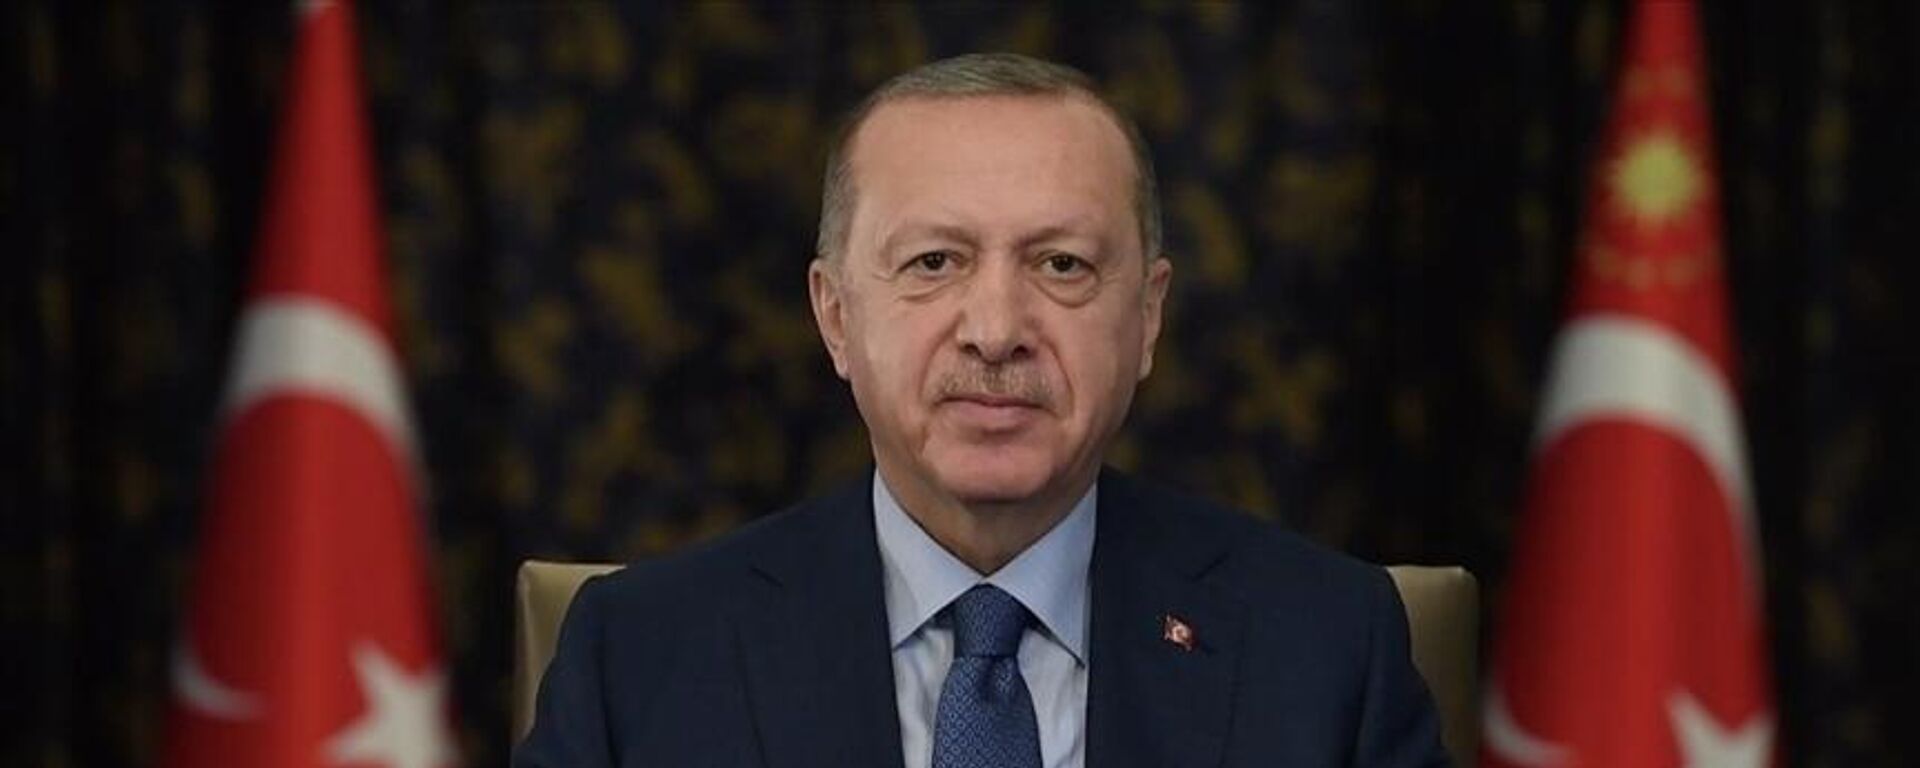 Cumhurbaşkanı Erdoğan: Uluslararası toplumun Afgan halkına sırtını dönme lüksü yoktur - Sputnik Türkiye, 1920, 13.11.2021